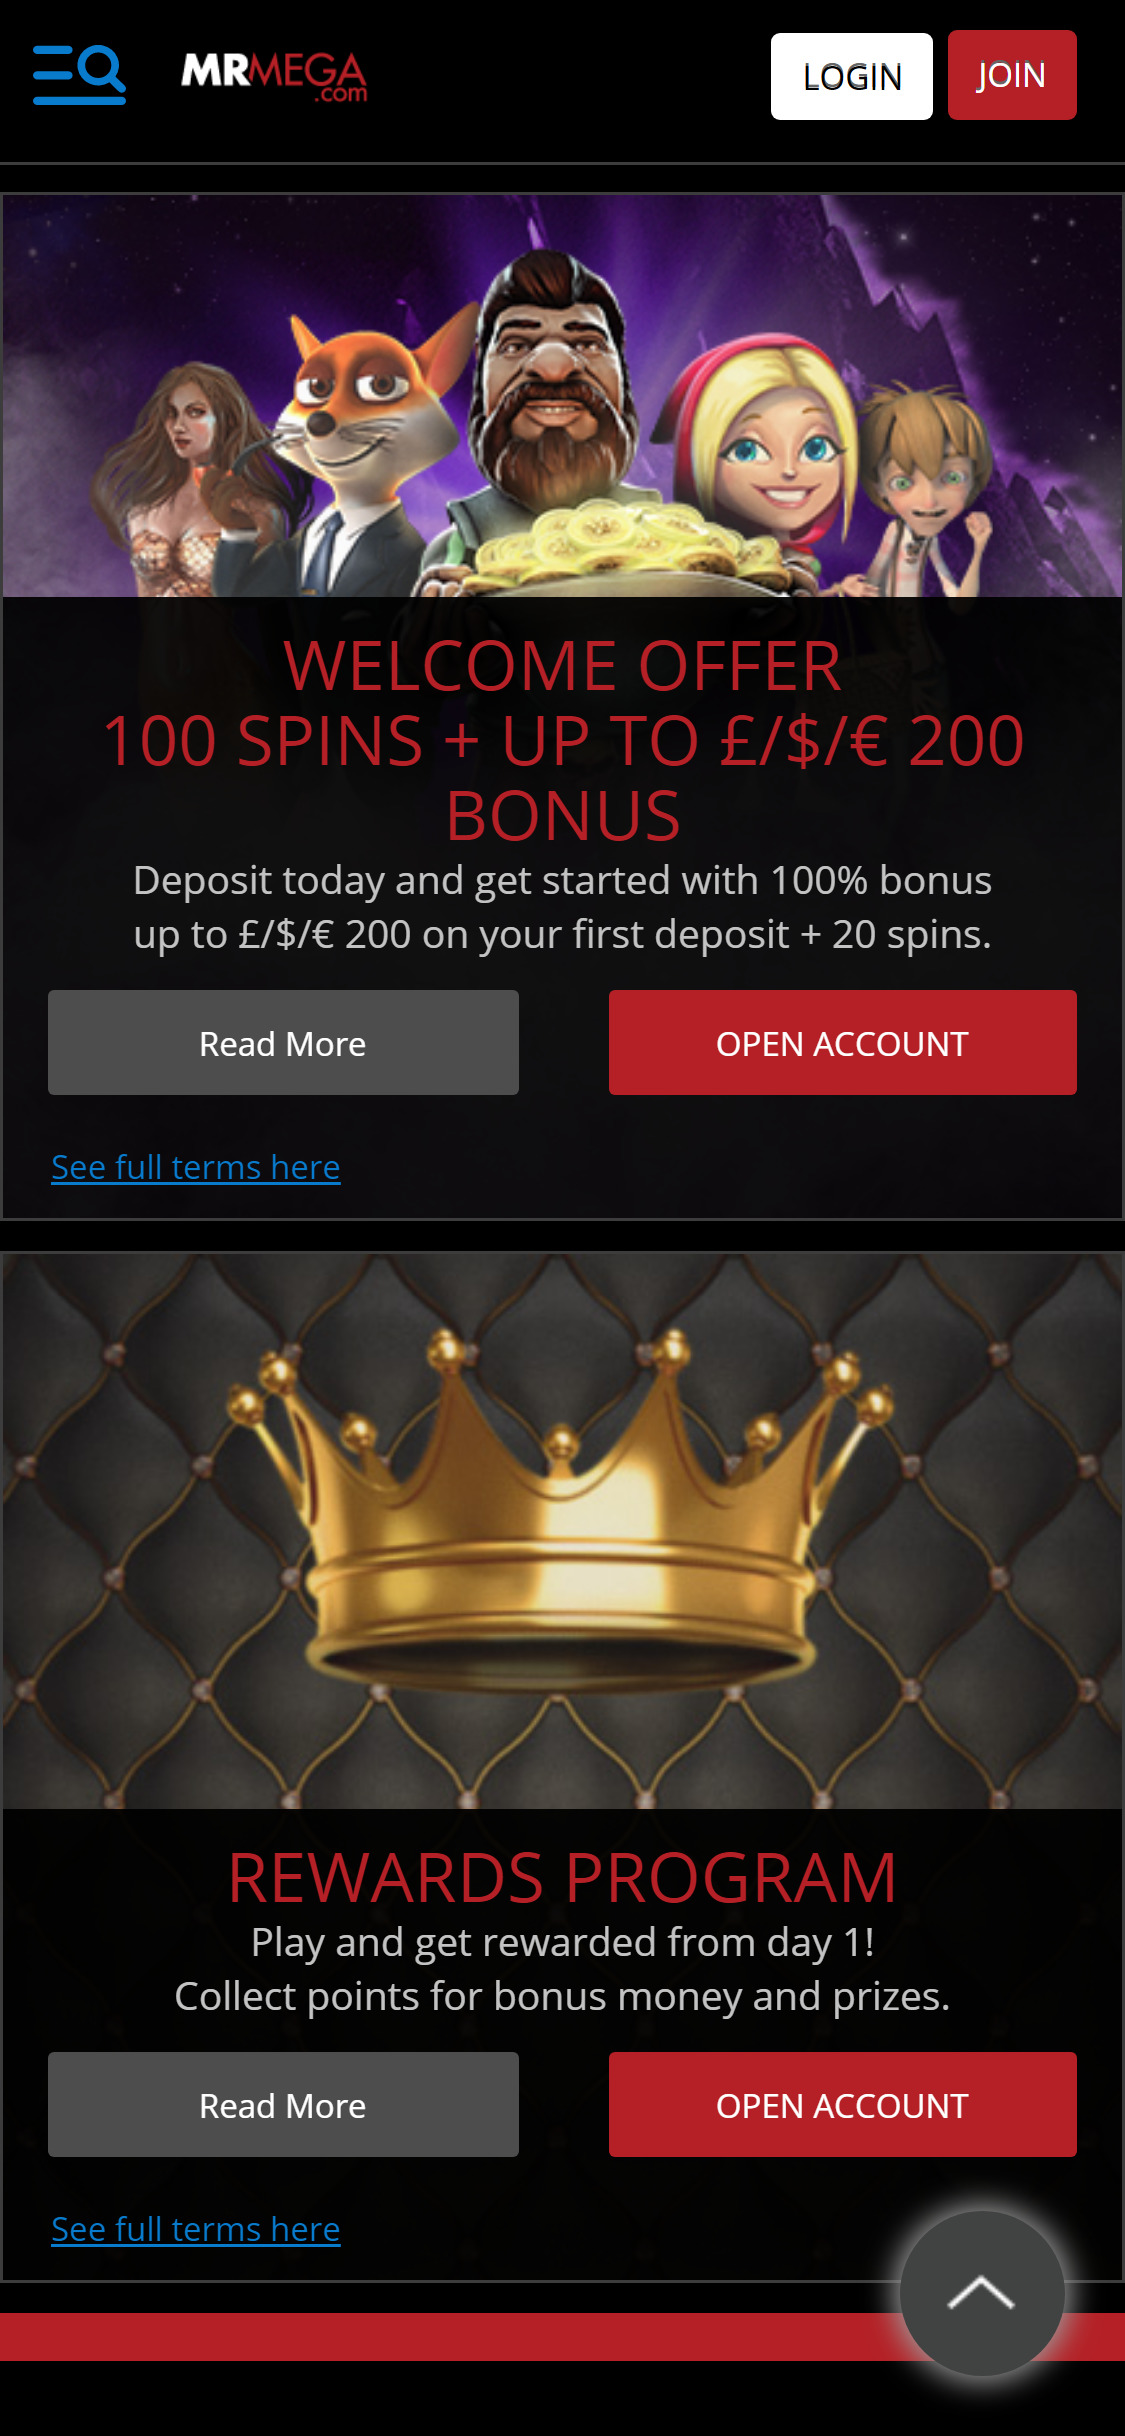 MrMega Casino Mobile No Deposit Bonus Review